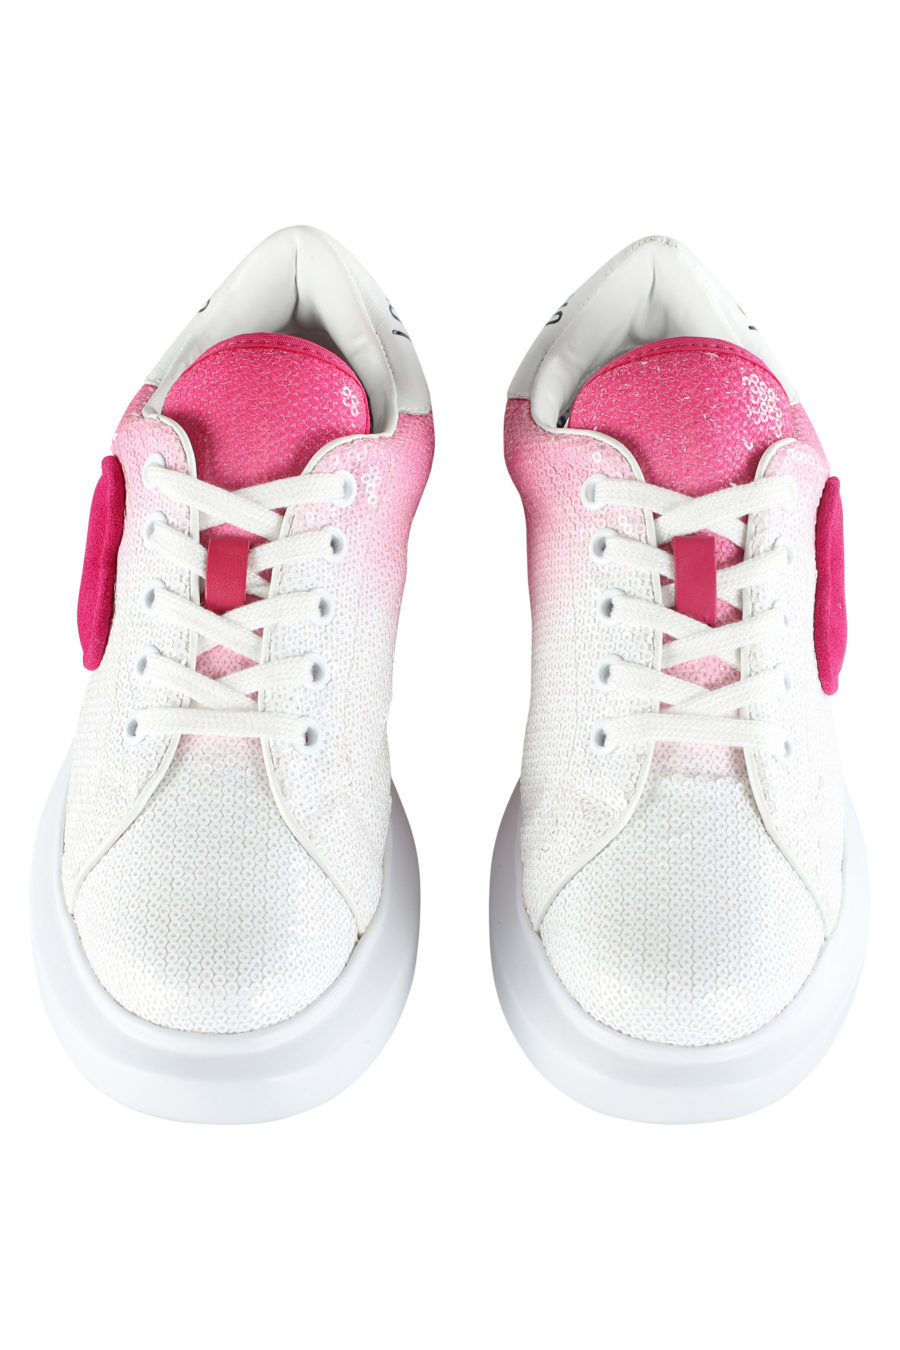 Zapatillas blancas con degrade rosa y lentejuelas - IMG 5349